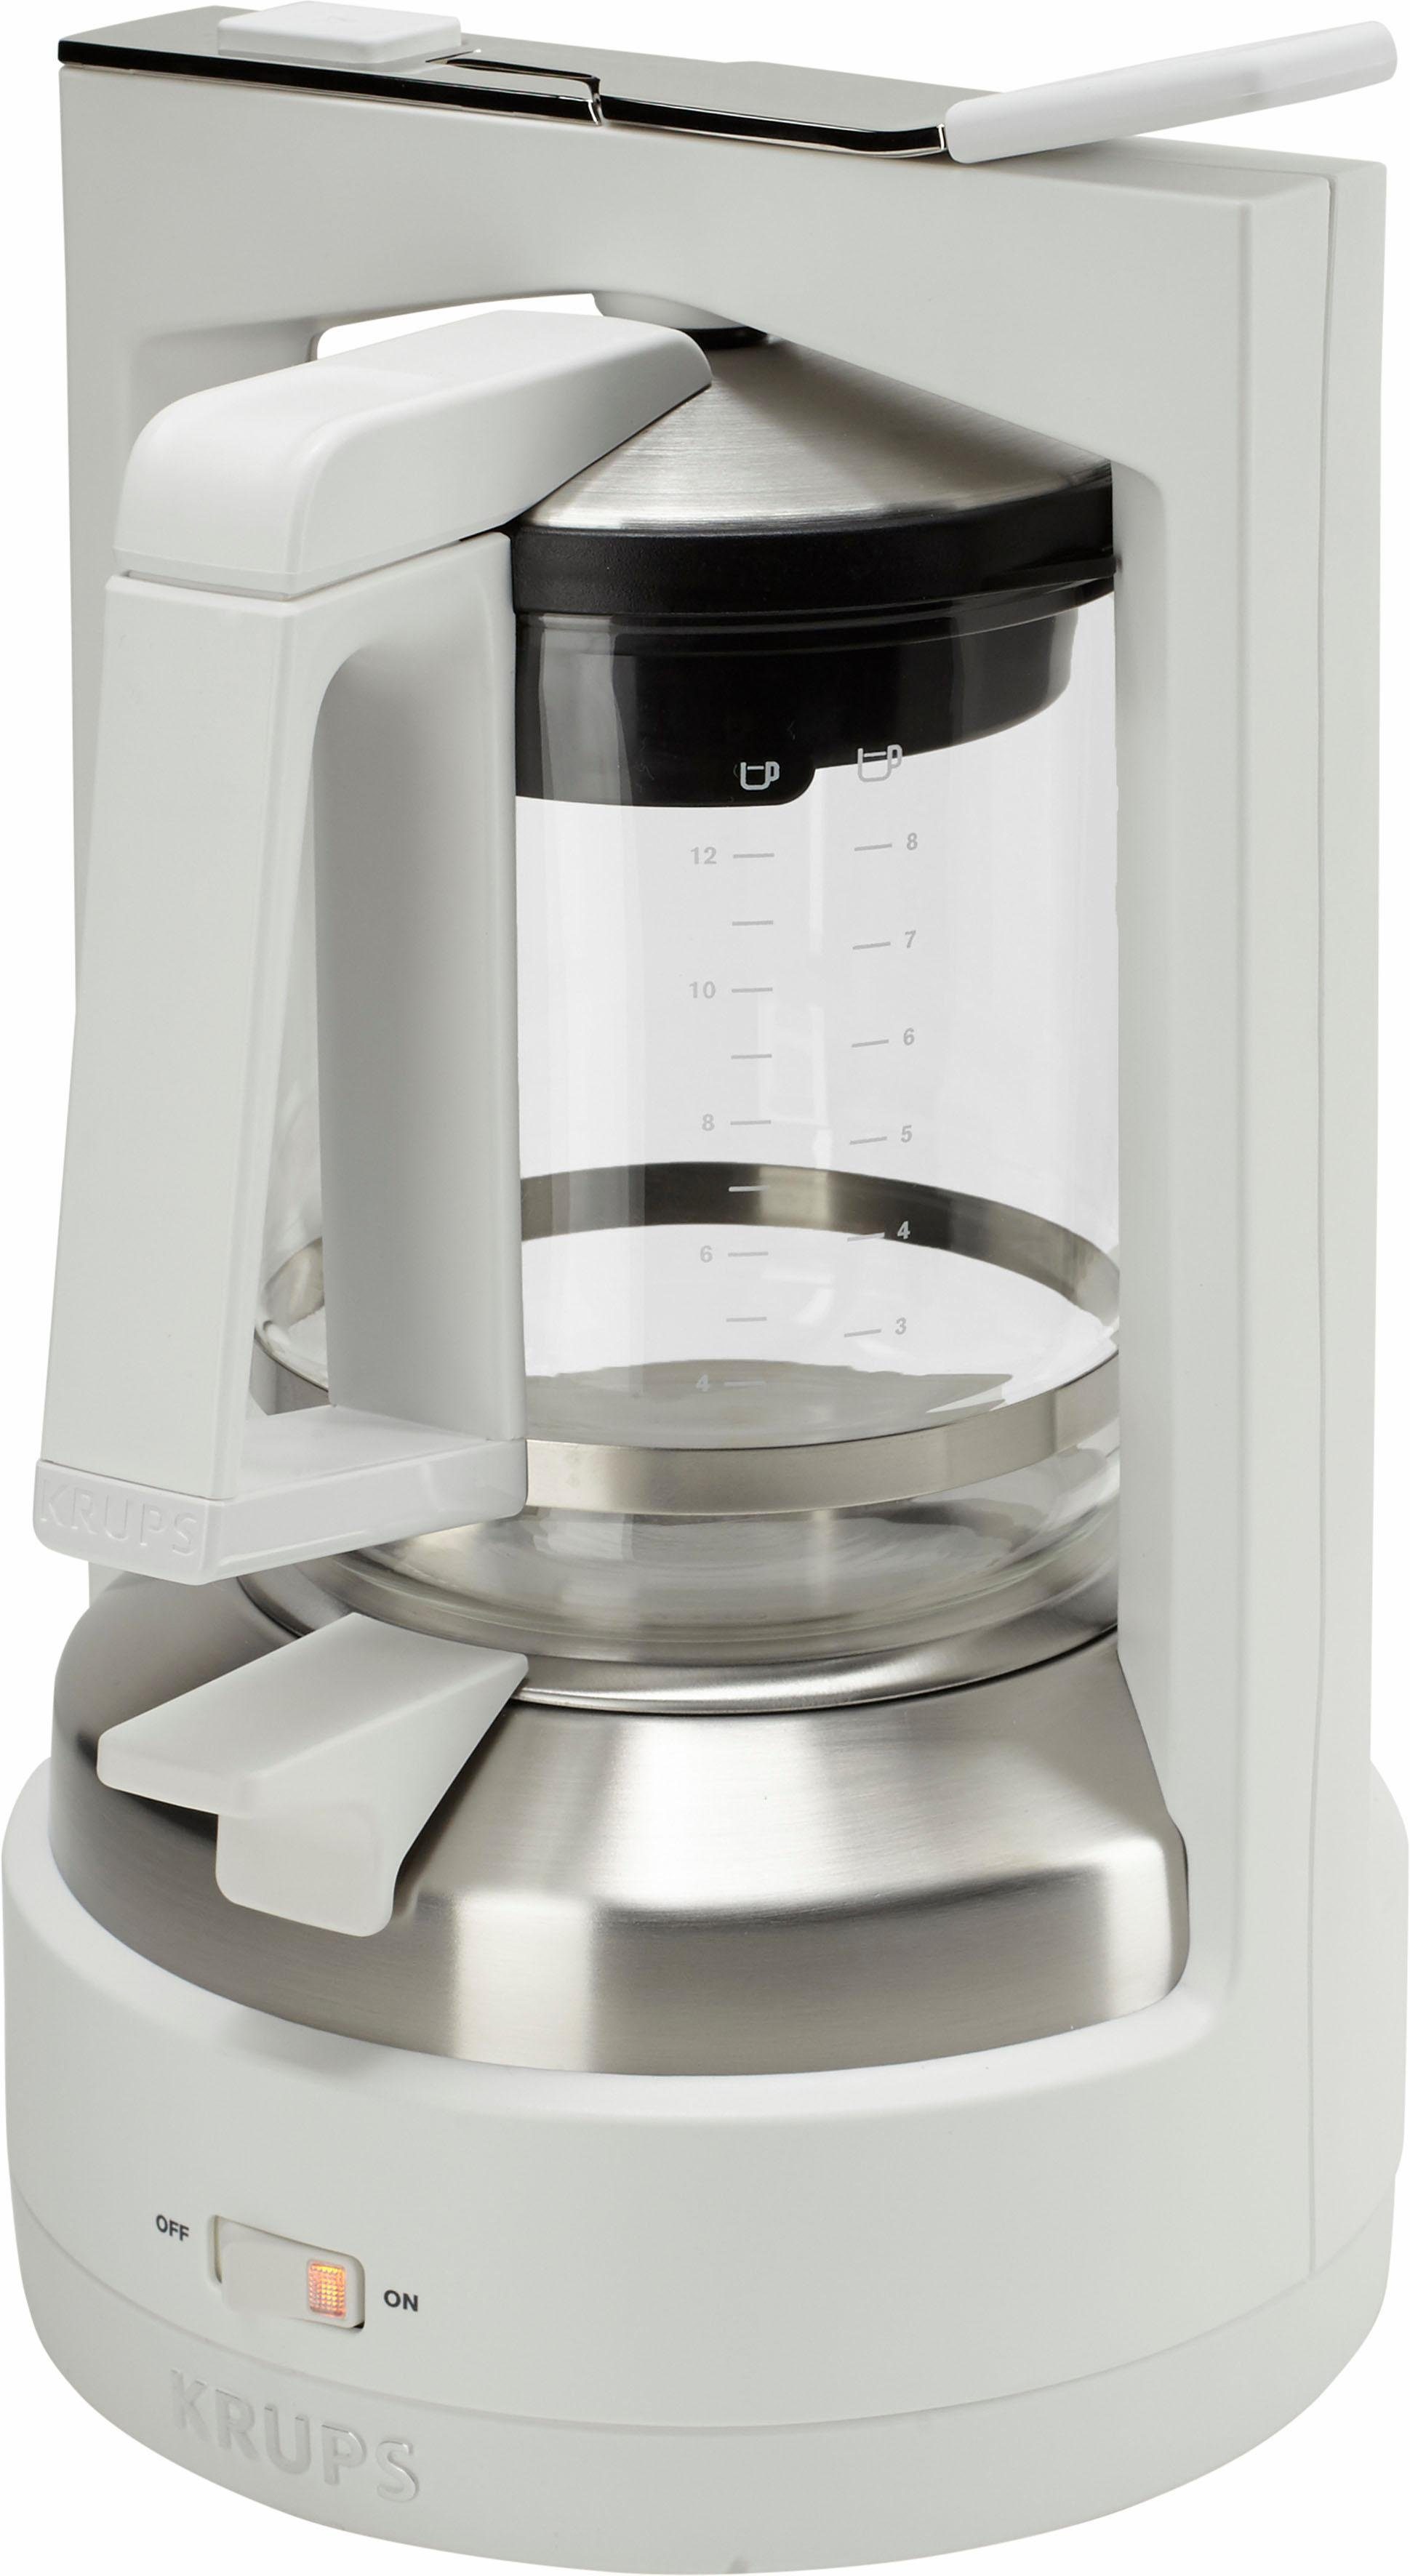 KRUPS koffiezetapparaat met druksysteem KM4682 T 8.2, wit-edelstaal